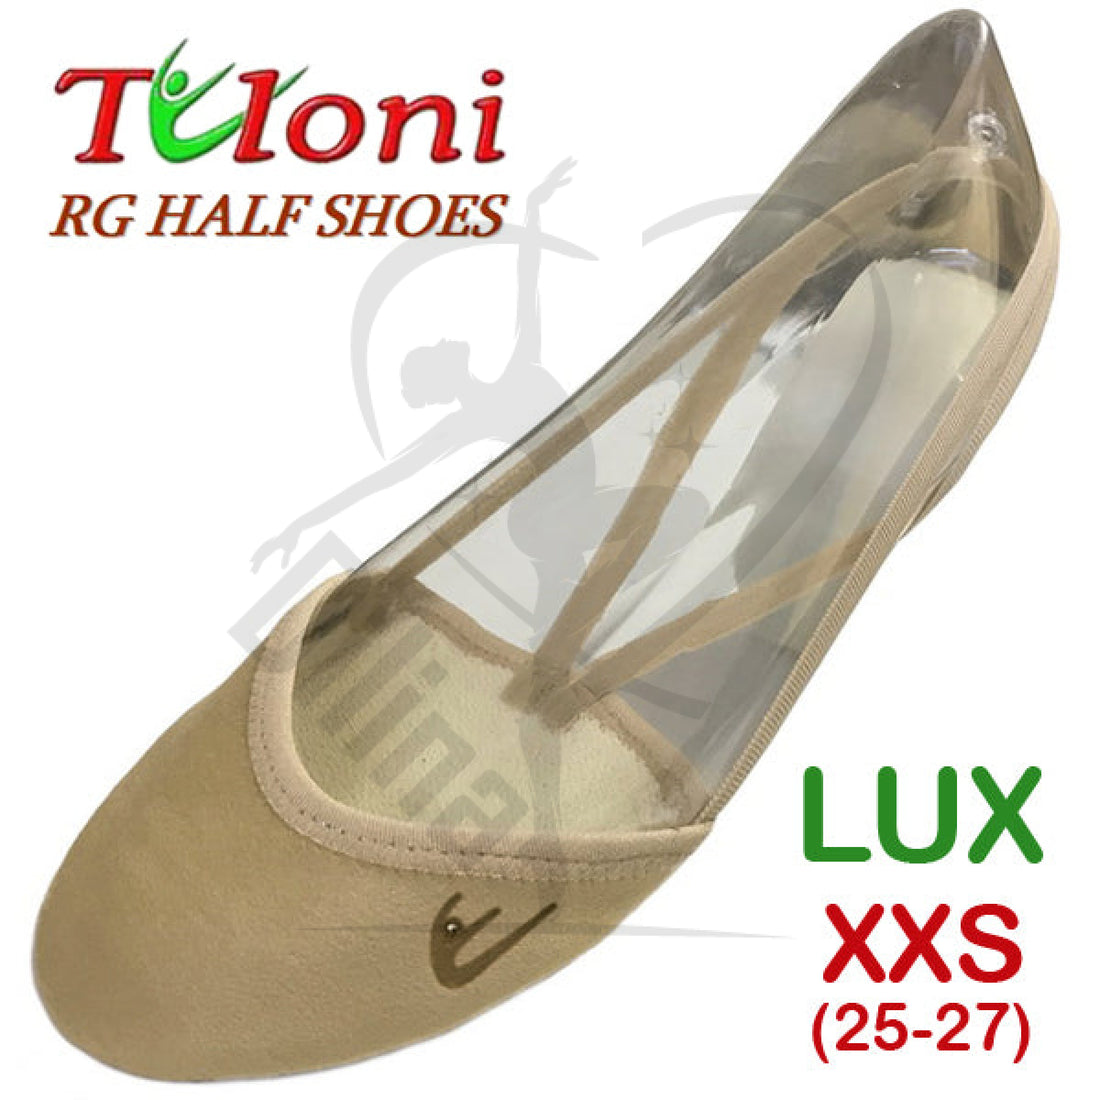 Tuloni Half Shoes Mod. Lux Xxs (25-27) Shoes